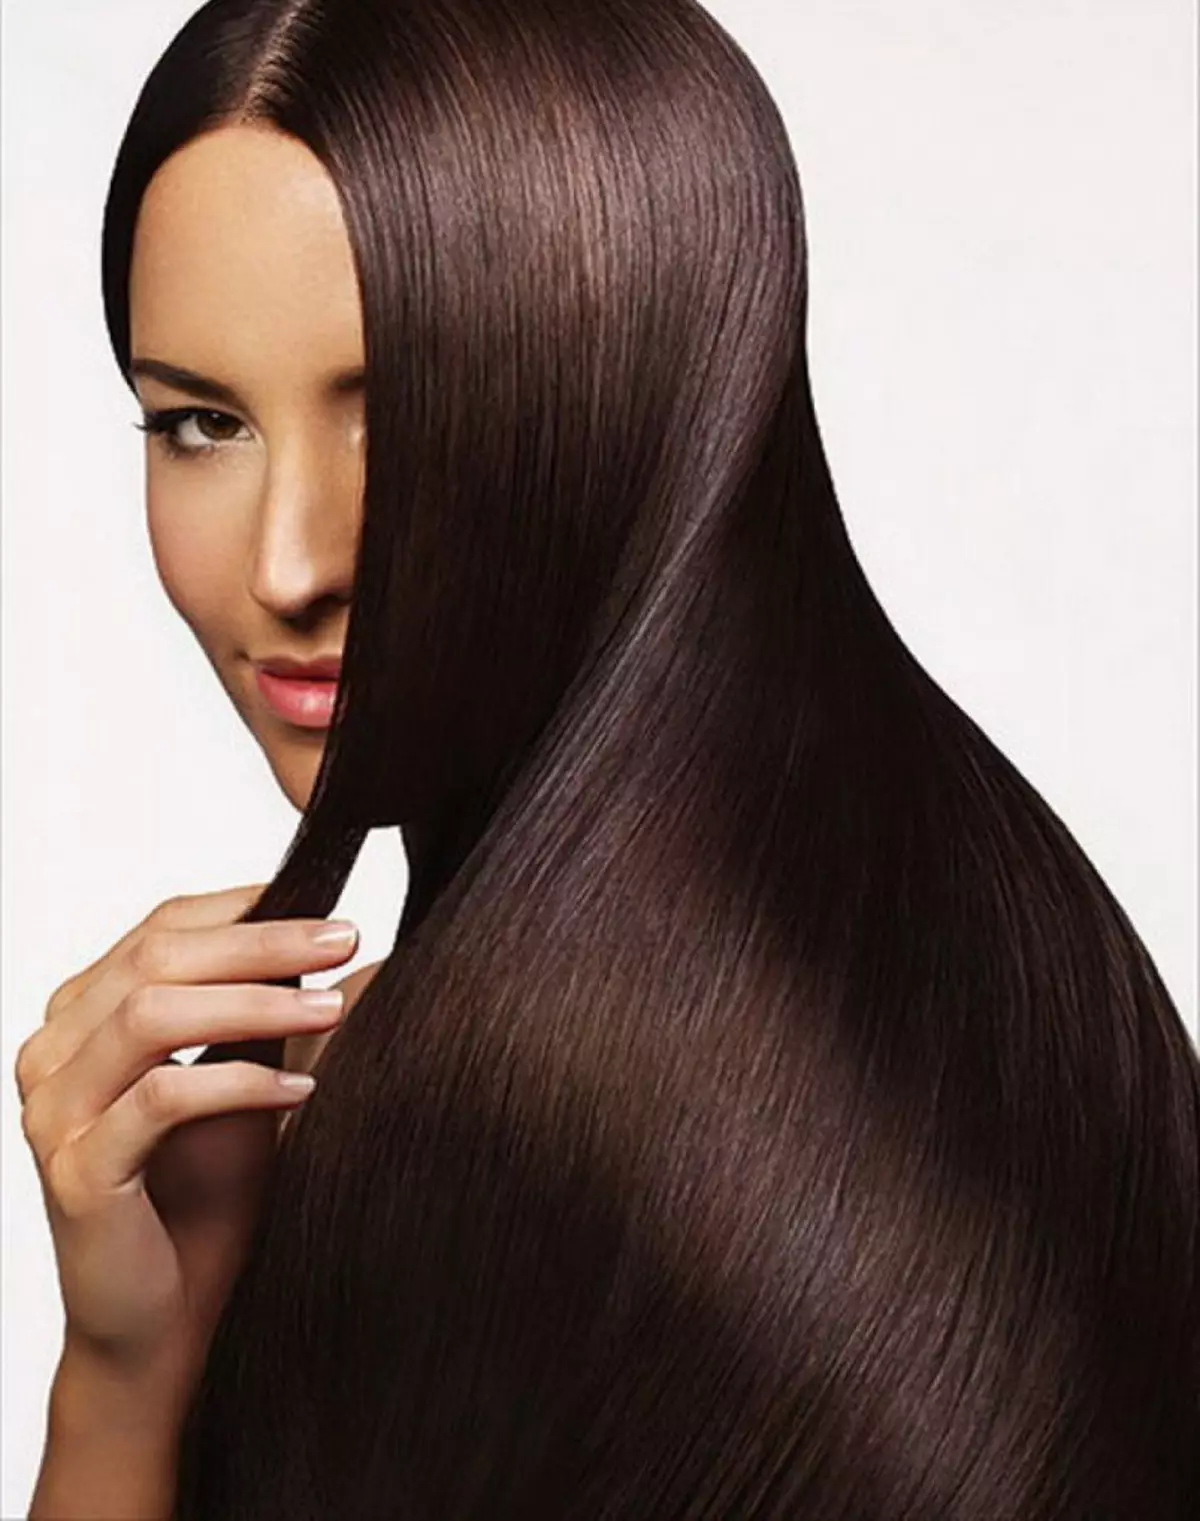 Hair Care（82枚の写真）：ほこりっぽい髪の毛の介護専門家のためのヒント。どのような化粧がどんな使いやすいですか？レビュー 16761_66